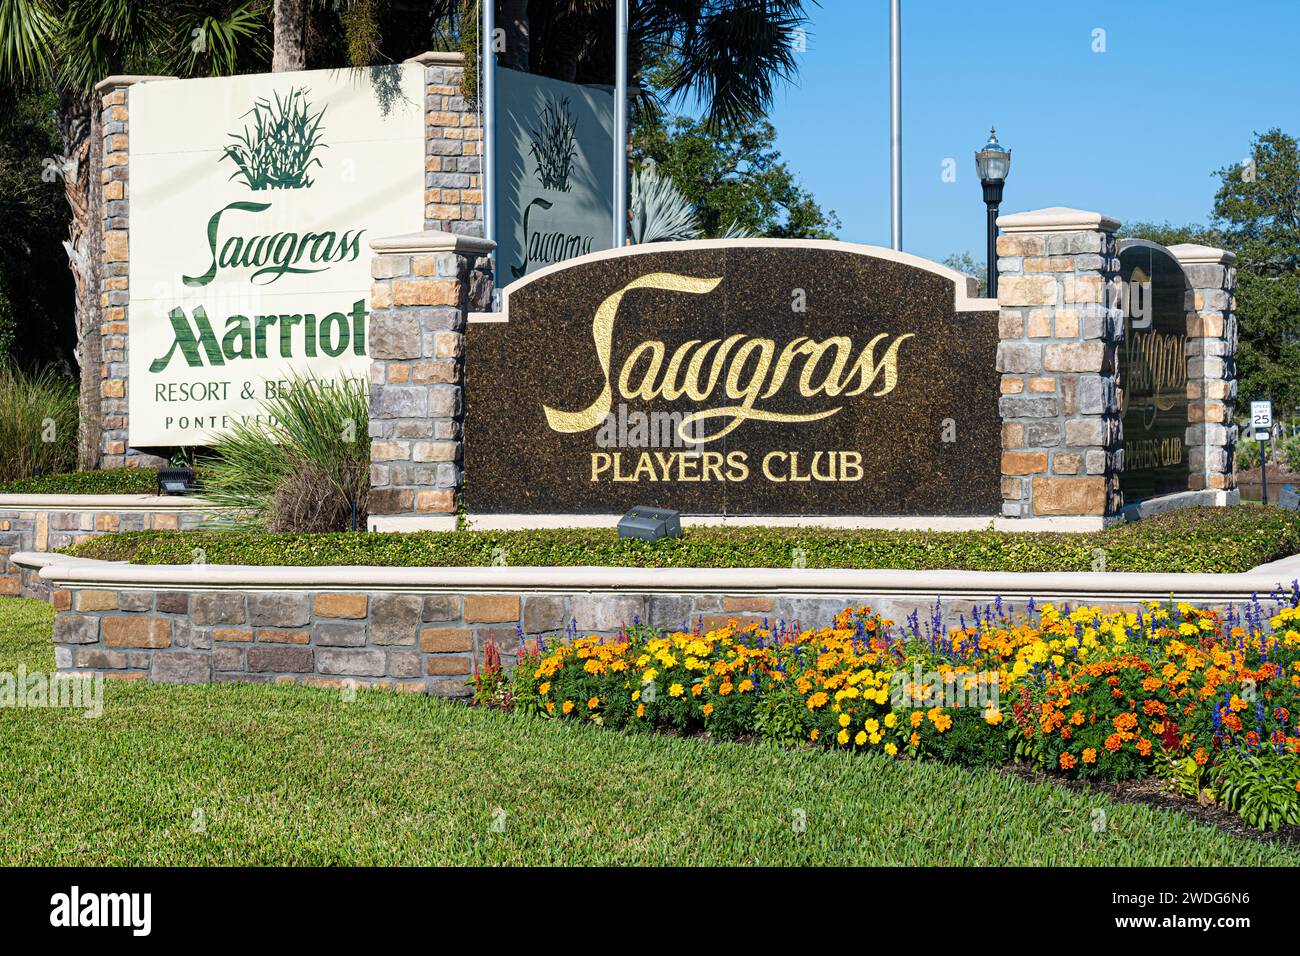 Ingresso al Sawgrass Players Club e al Sawgrass Marriott Resort & Beach Club lungo la strada costiera panoramica e storica A1A a Ponte Vedra Beach, Florida. Foto Stock